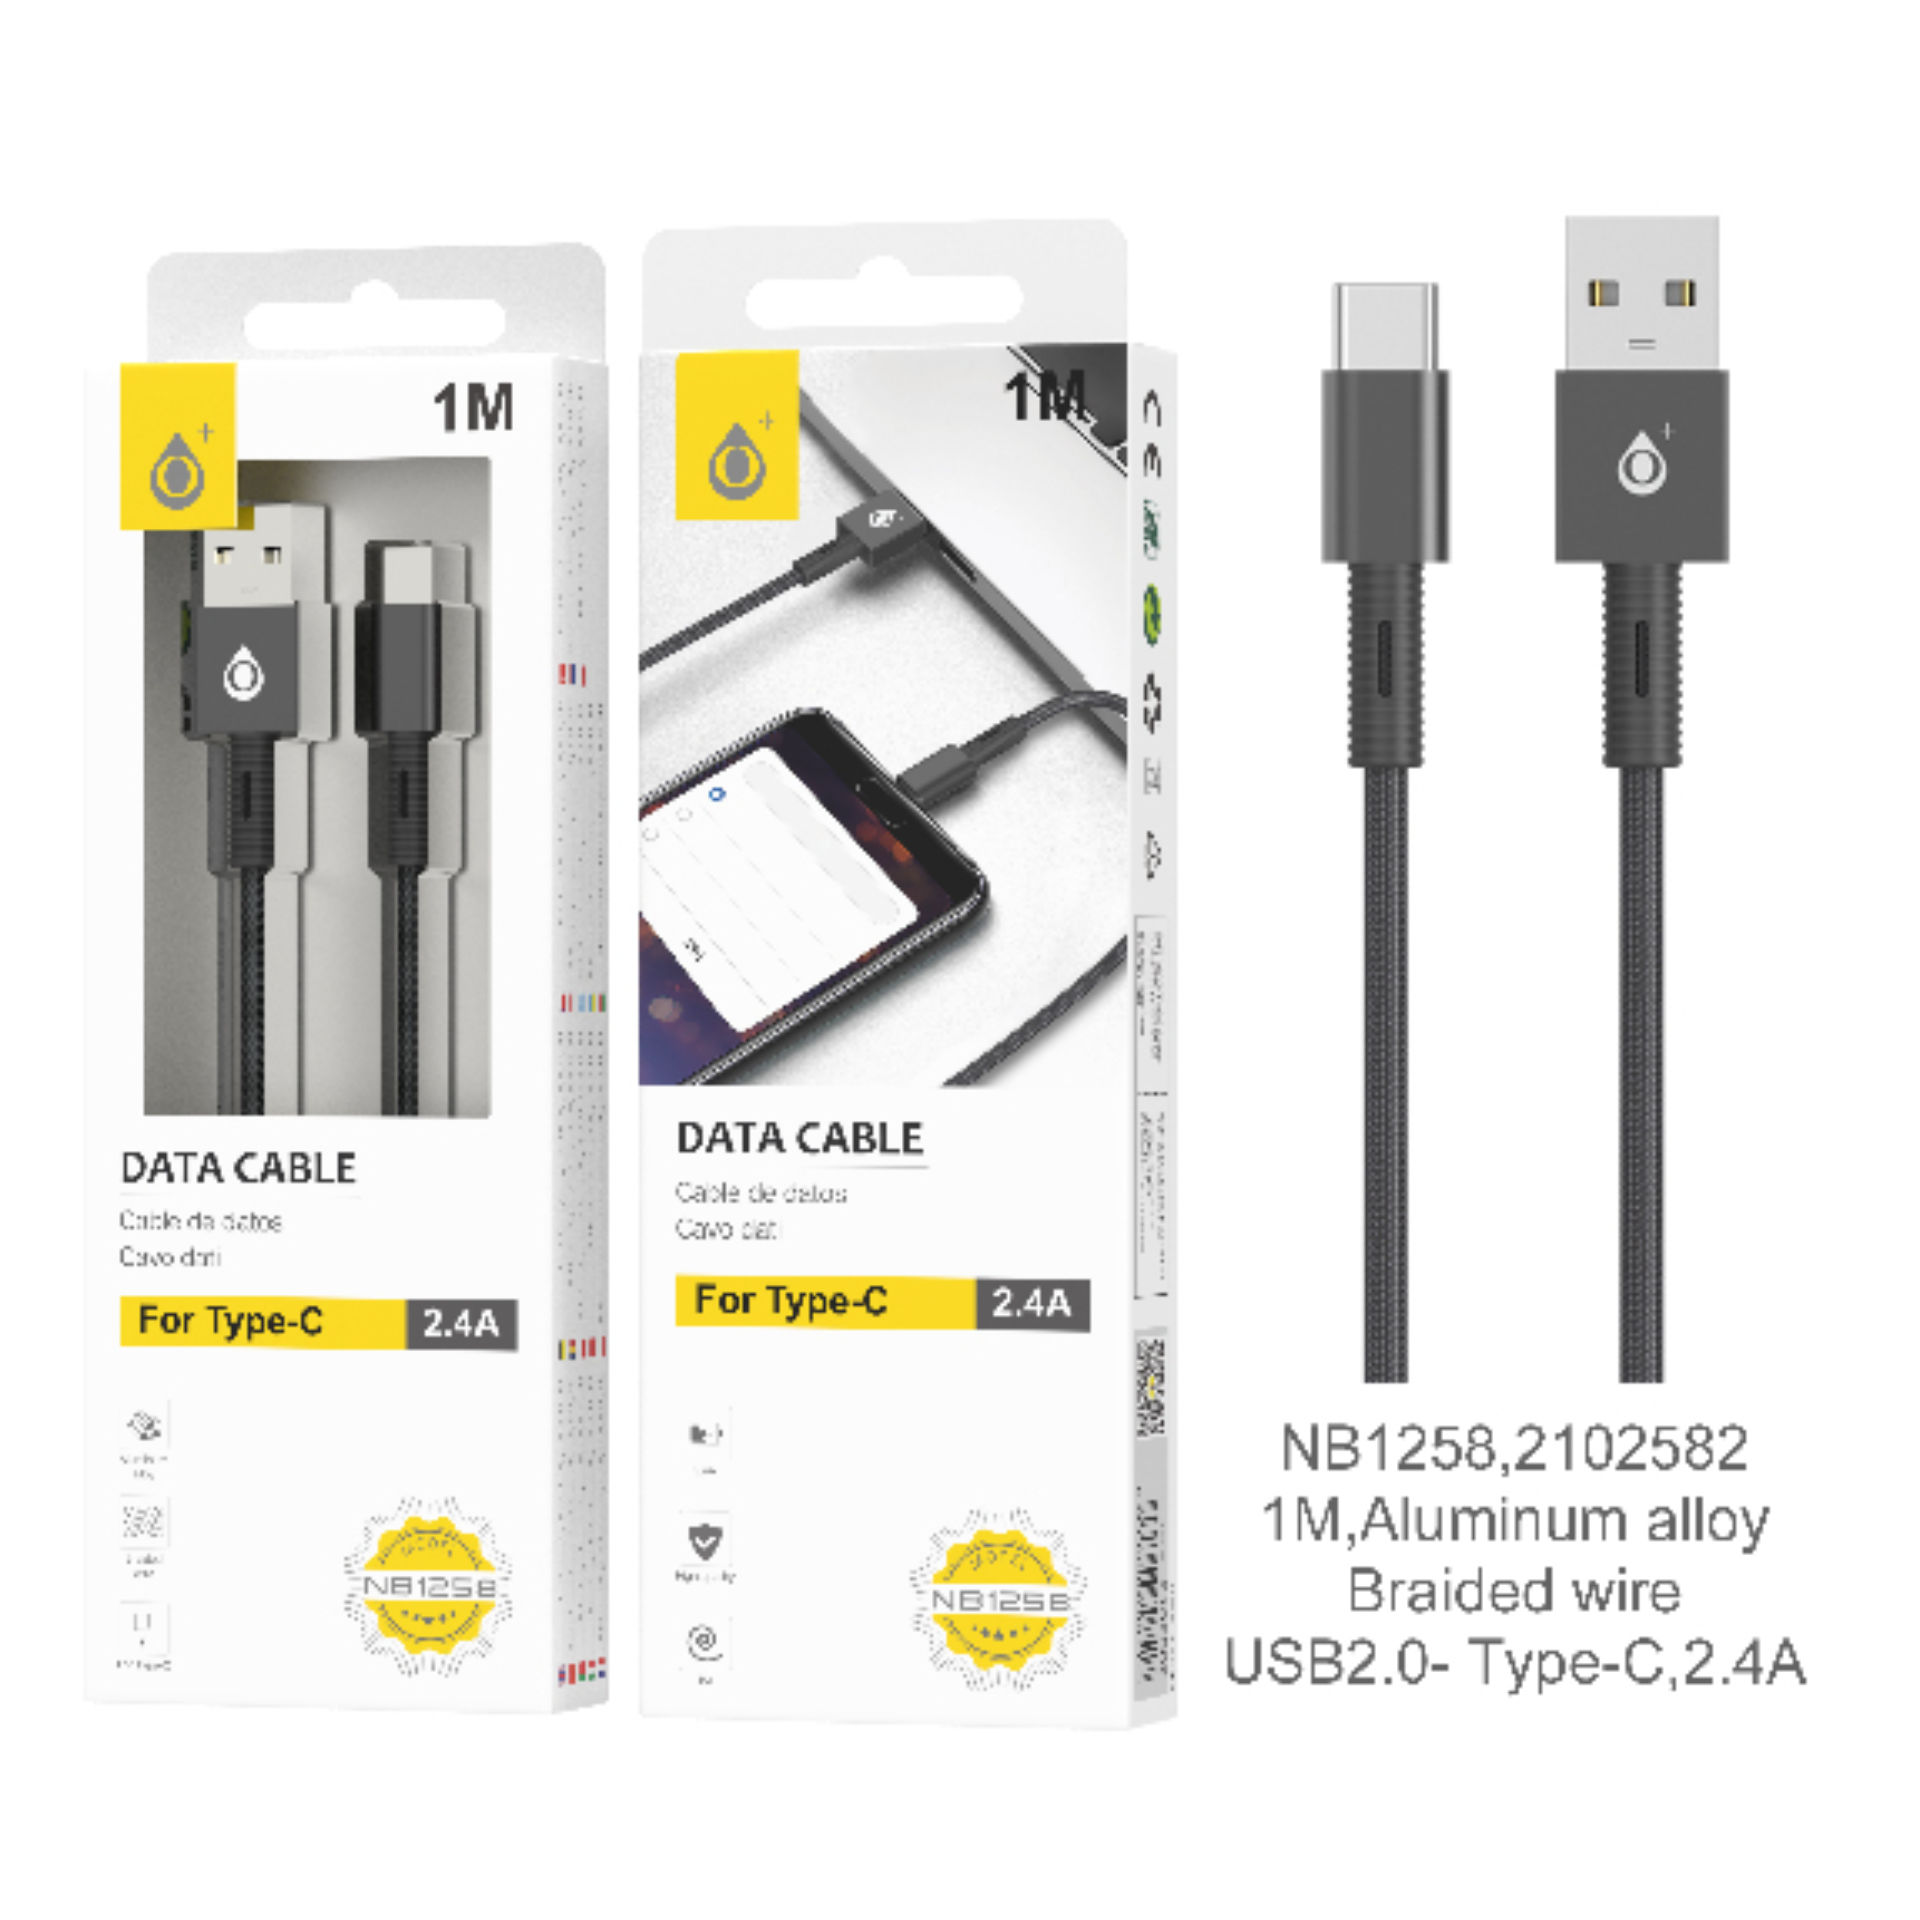 ONEPLUS NB1258 CAVO DATI USB Type-C 2.4A NEROOne Plus